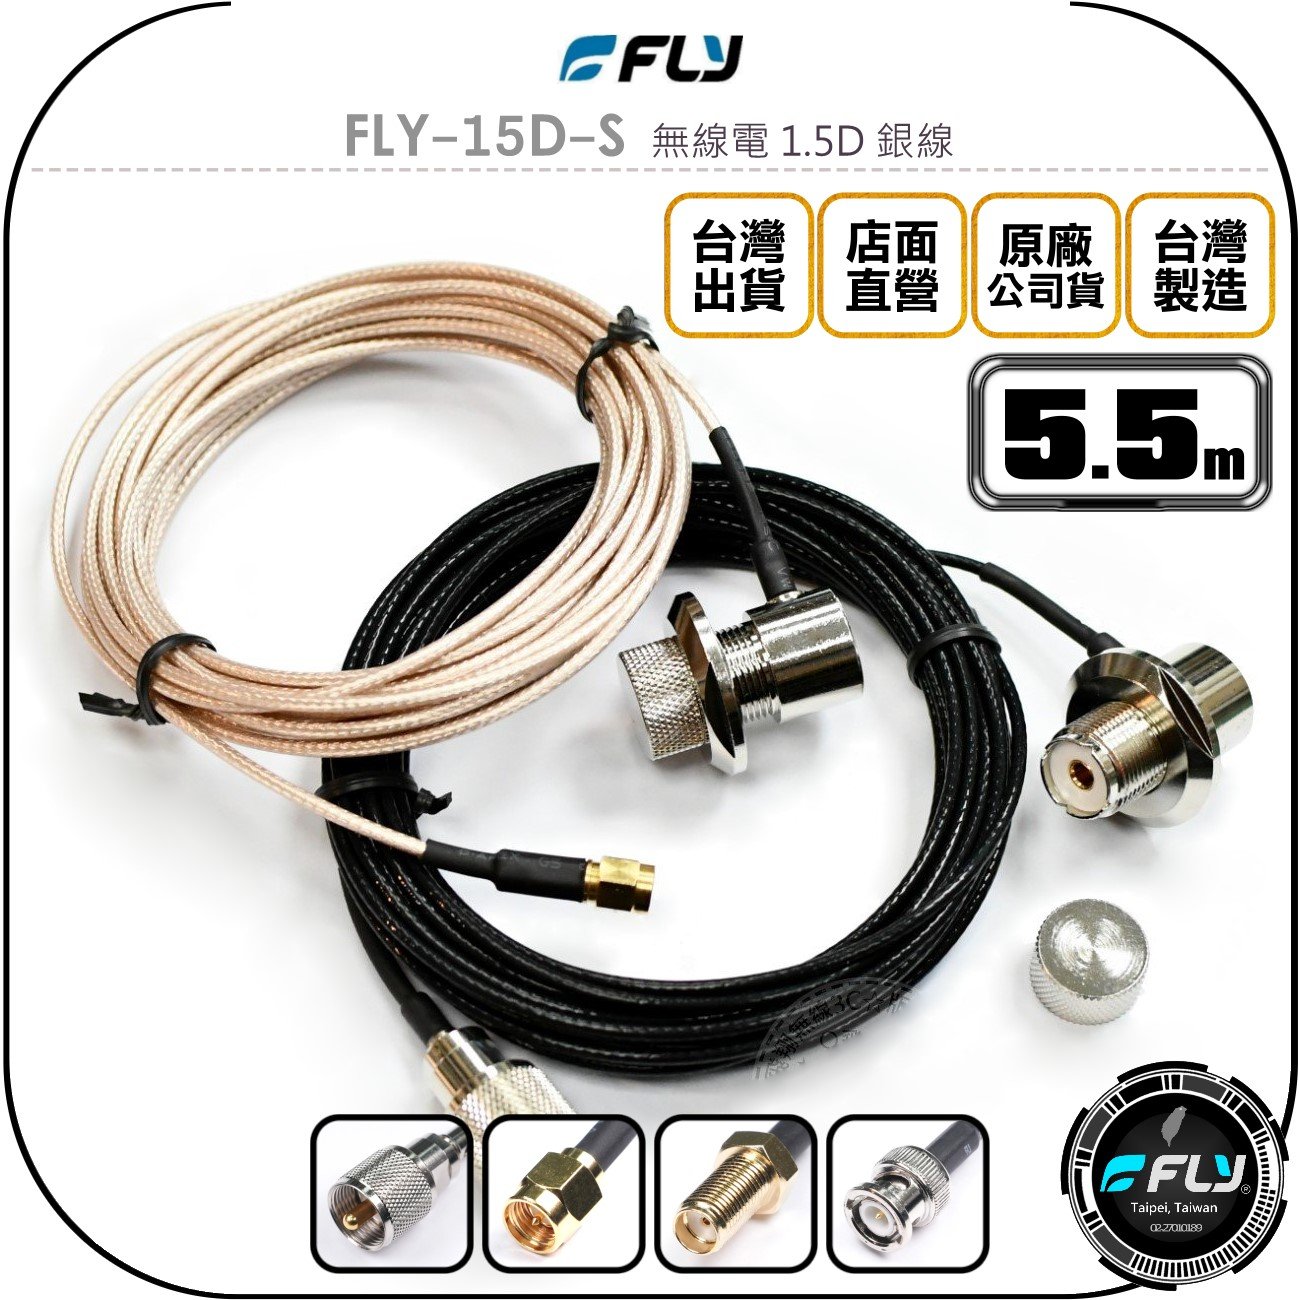 《飛翔無線3C》FLY FLY-15D-S 無線電 1.5D 銀線 5.5m◉公司貨◉訊號線◉對講機收發◉車機外接傳輸